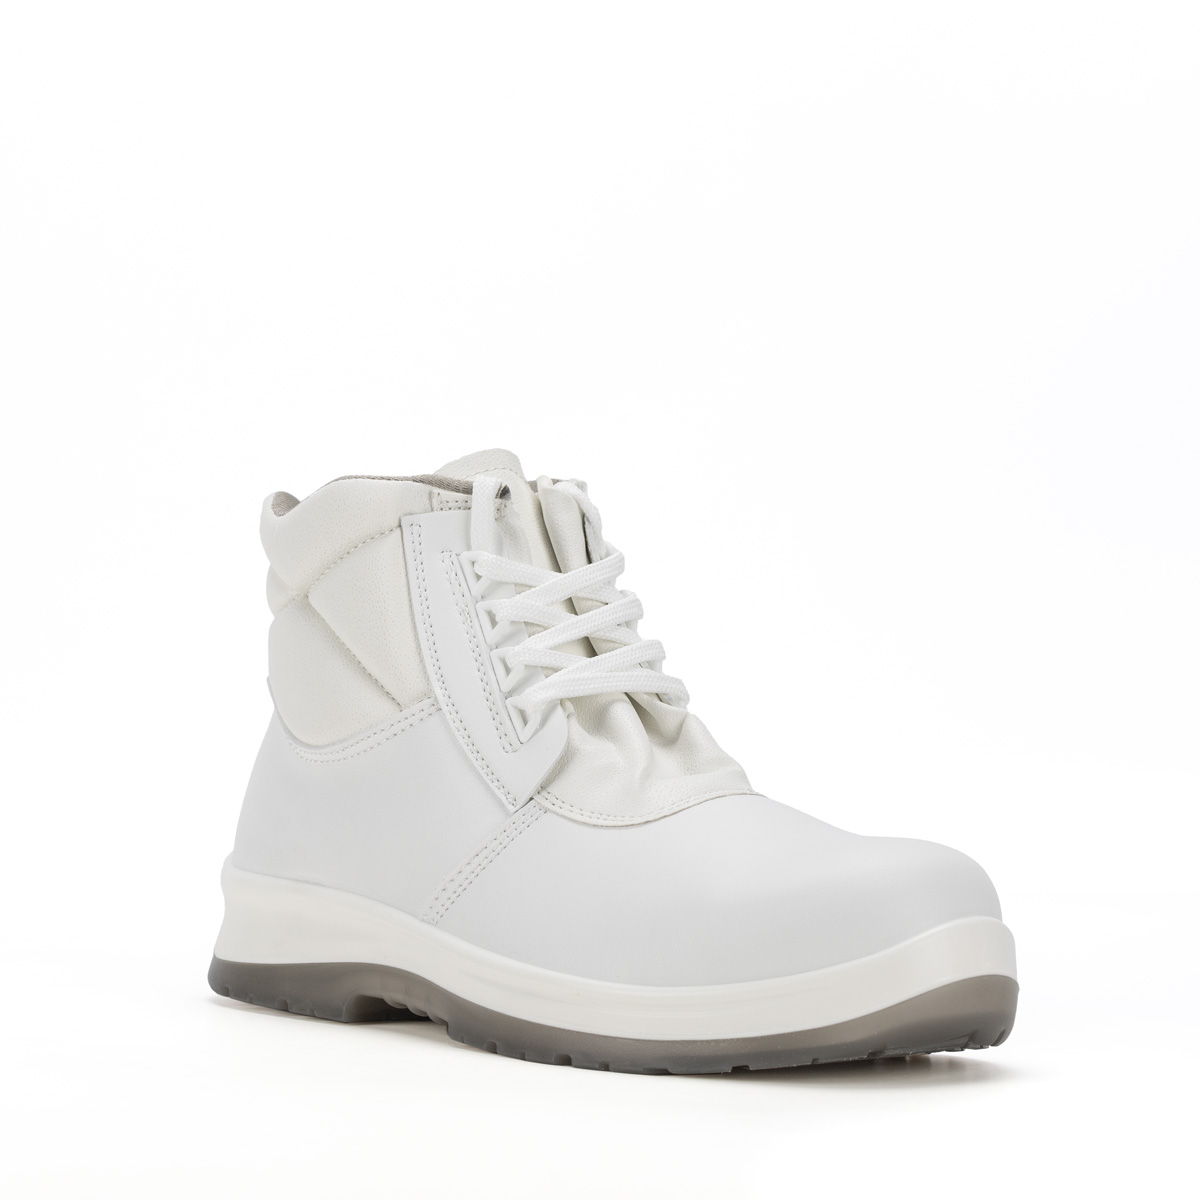 Crystal BERGAMO - protezione modello Shoes 86206-00 - boot Safety classe con Codice Sixton S2 SRC Ankle Peak di